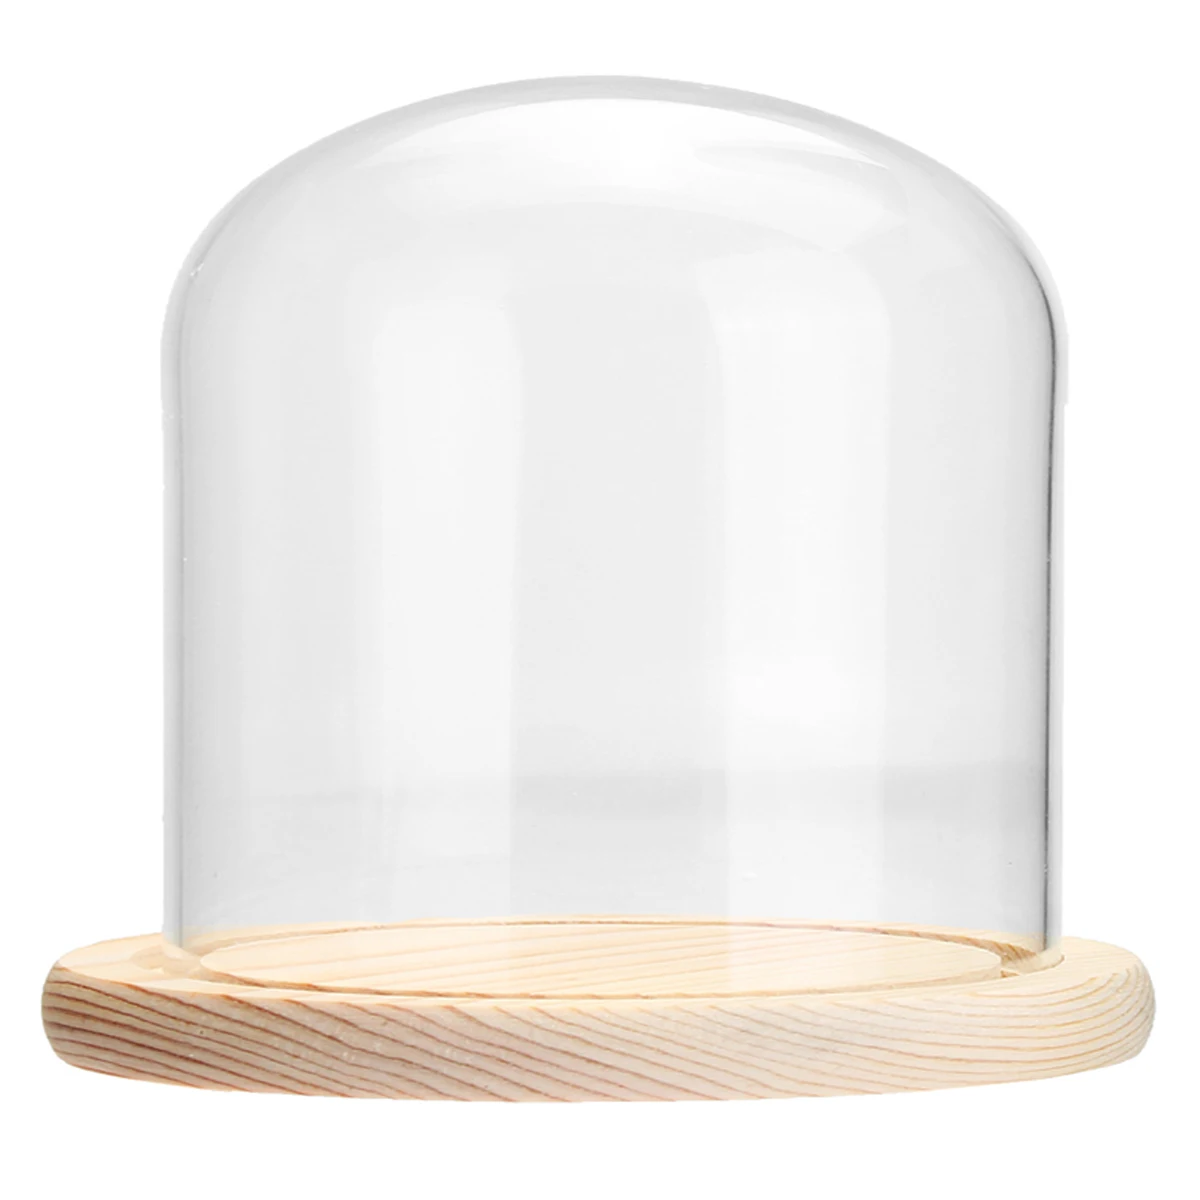 Фото Прозрачная стеклянная купольная баночка-колокольчик с деревянным основанием со